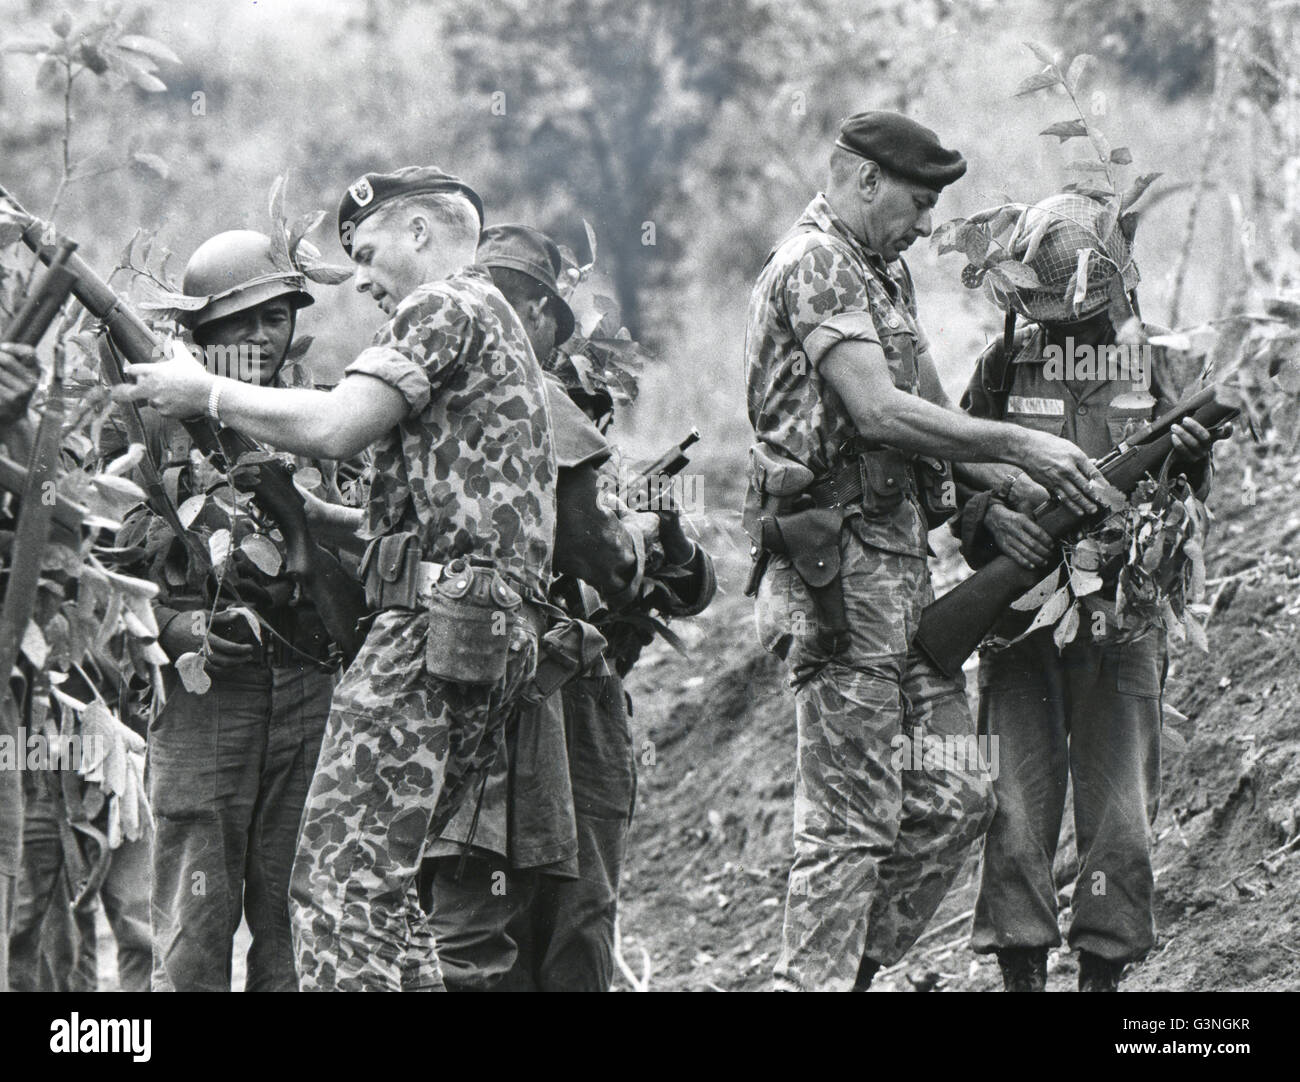 US-Green Beret Truppen trainieren Vietnamesisch - Unterricht in Treffsicherheit mit scharfer Munition ist native südvietnamesische Truppen von Sgt Stanley Harold, links, und Capt Robert Lopez der Special Forces gegeben. Durch die rasche Zunahme der Größe der dieses Korps Offiziere sind jetzt auf einer "non-freiwilliger" Basis zugewiesen, aber Soldaten sind alle noch freiwillige. Stockfoto